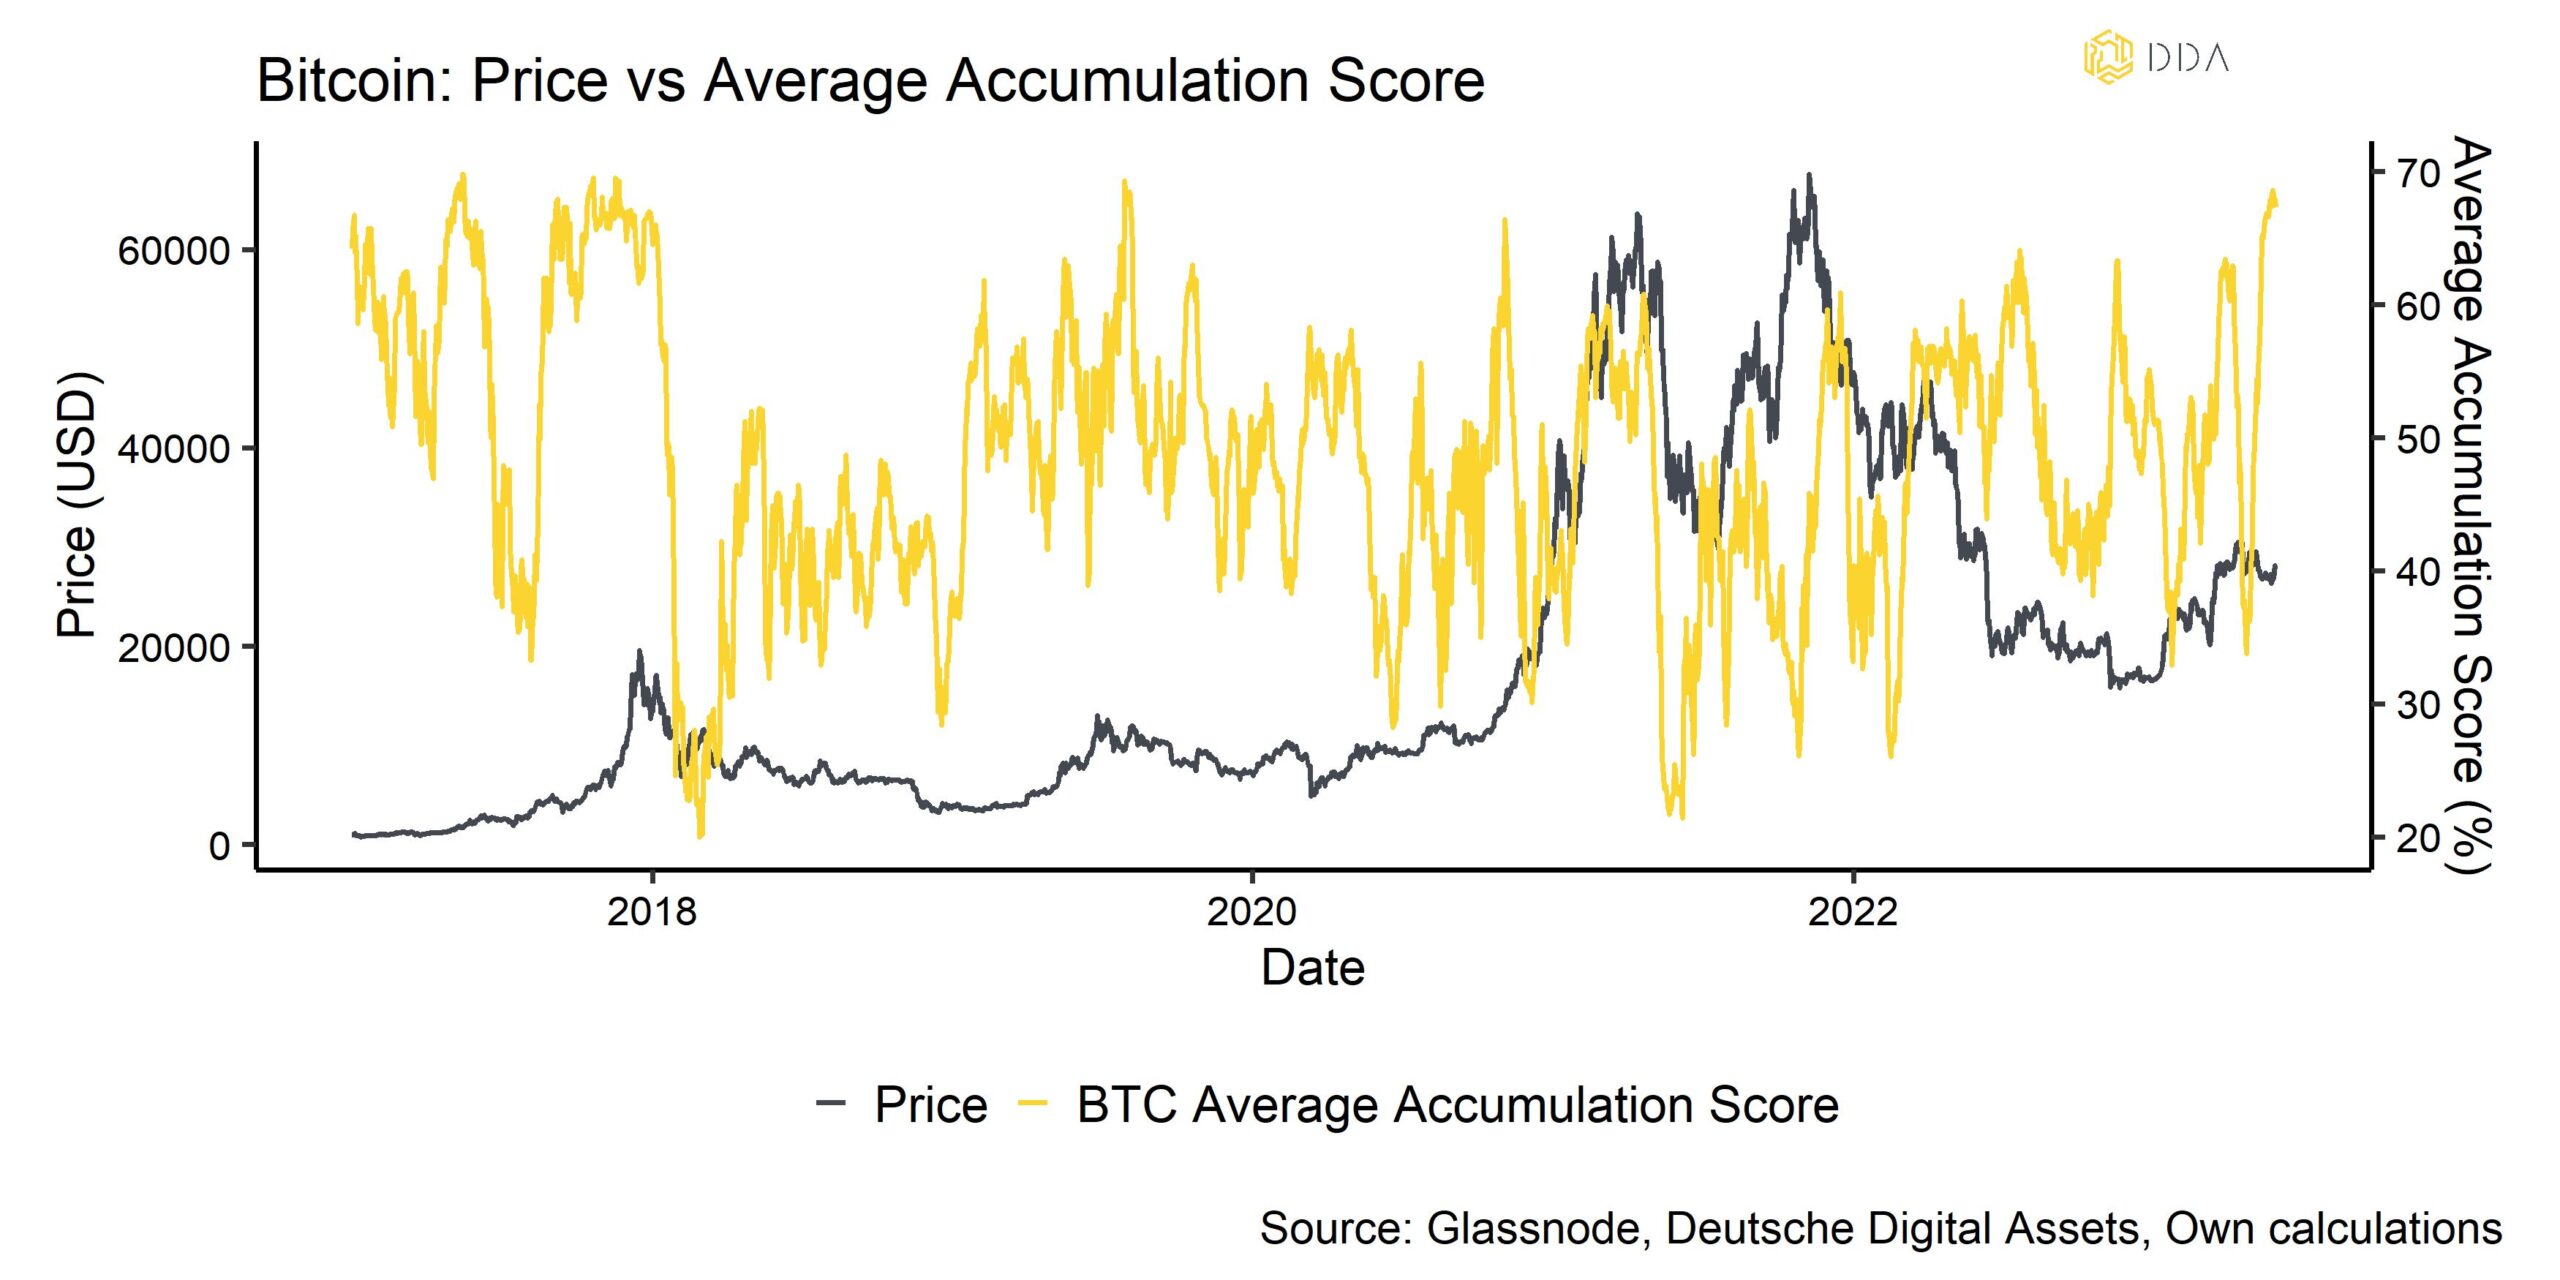 BTC Accumulation Score Average vs Price